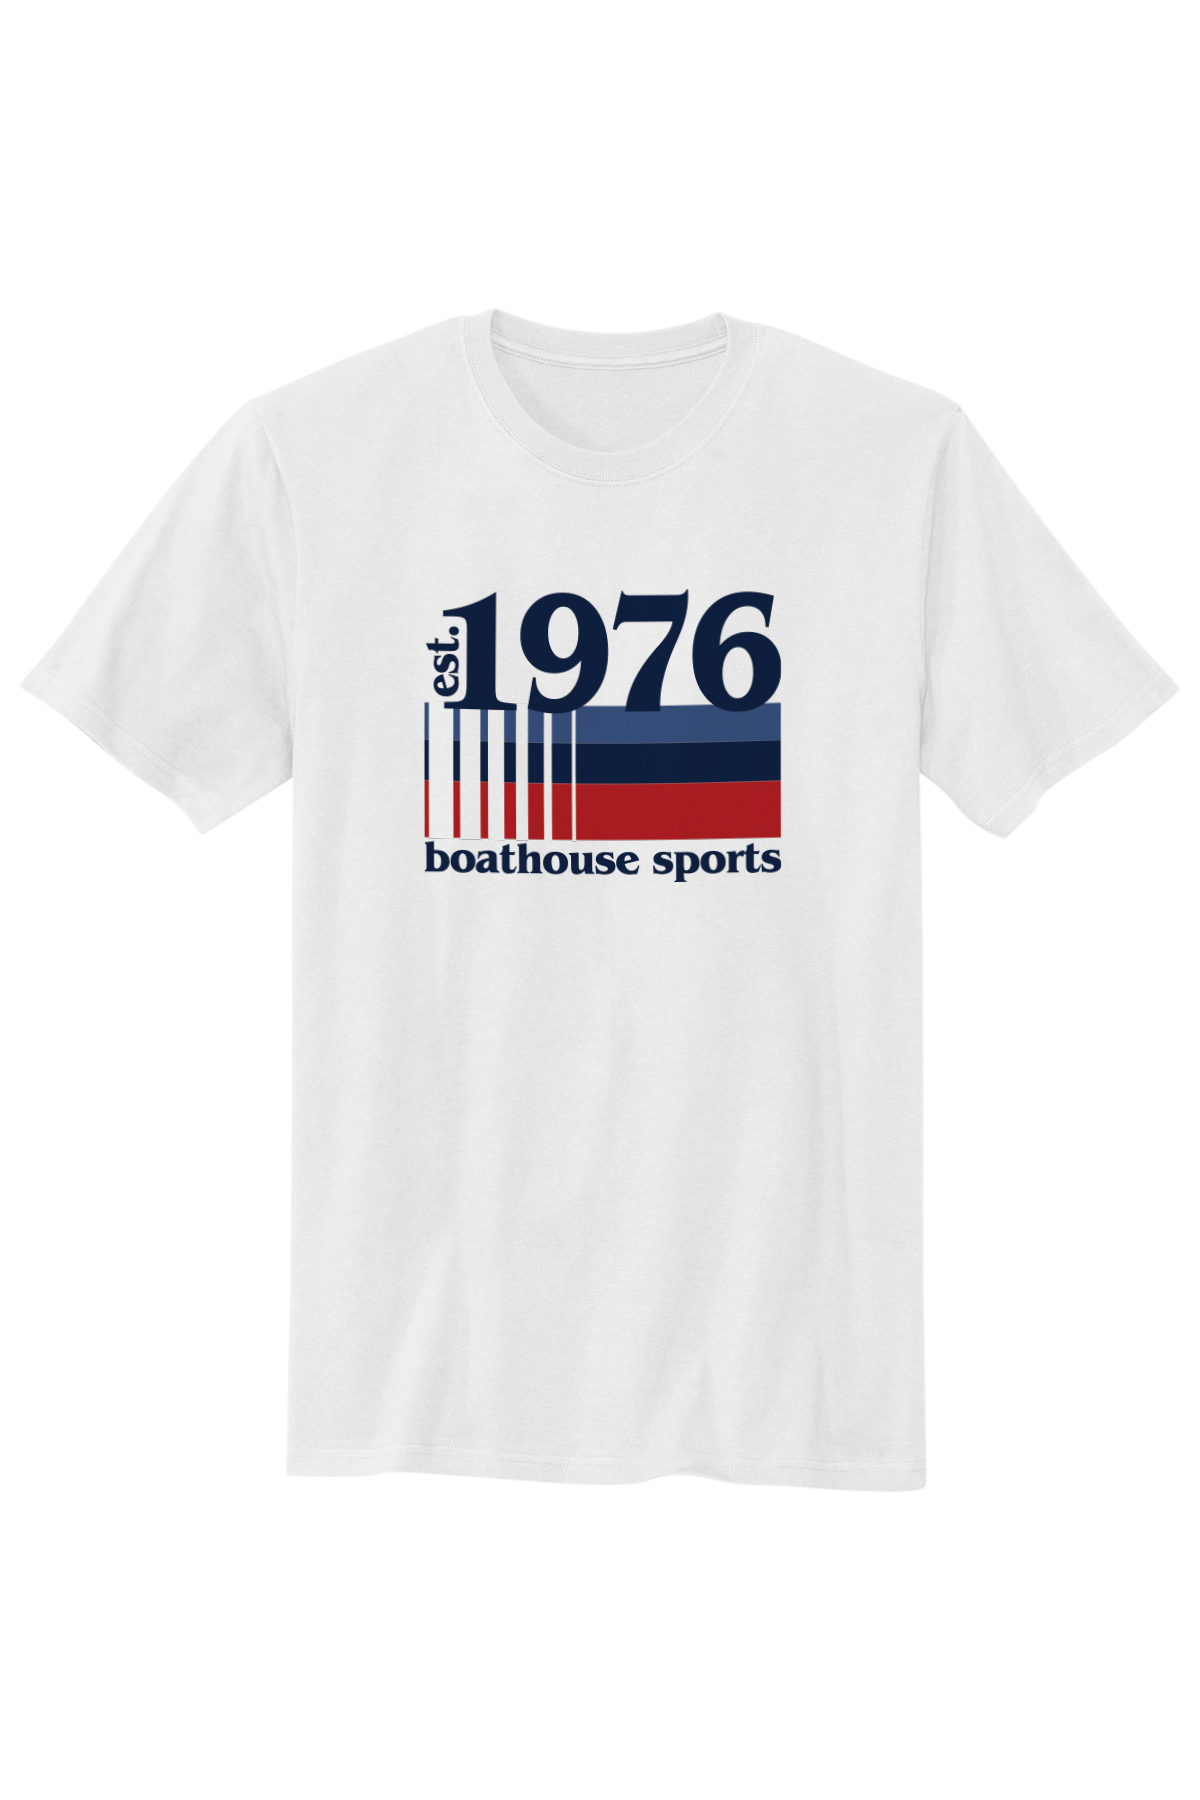 Boathouse 1976 Unisex T-Shirt White / Small